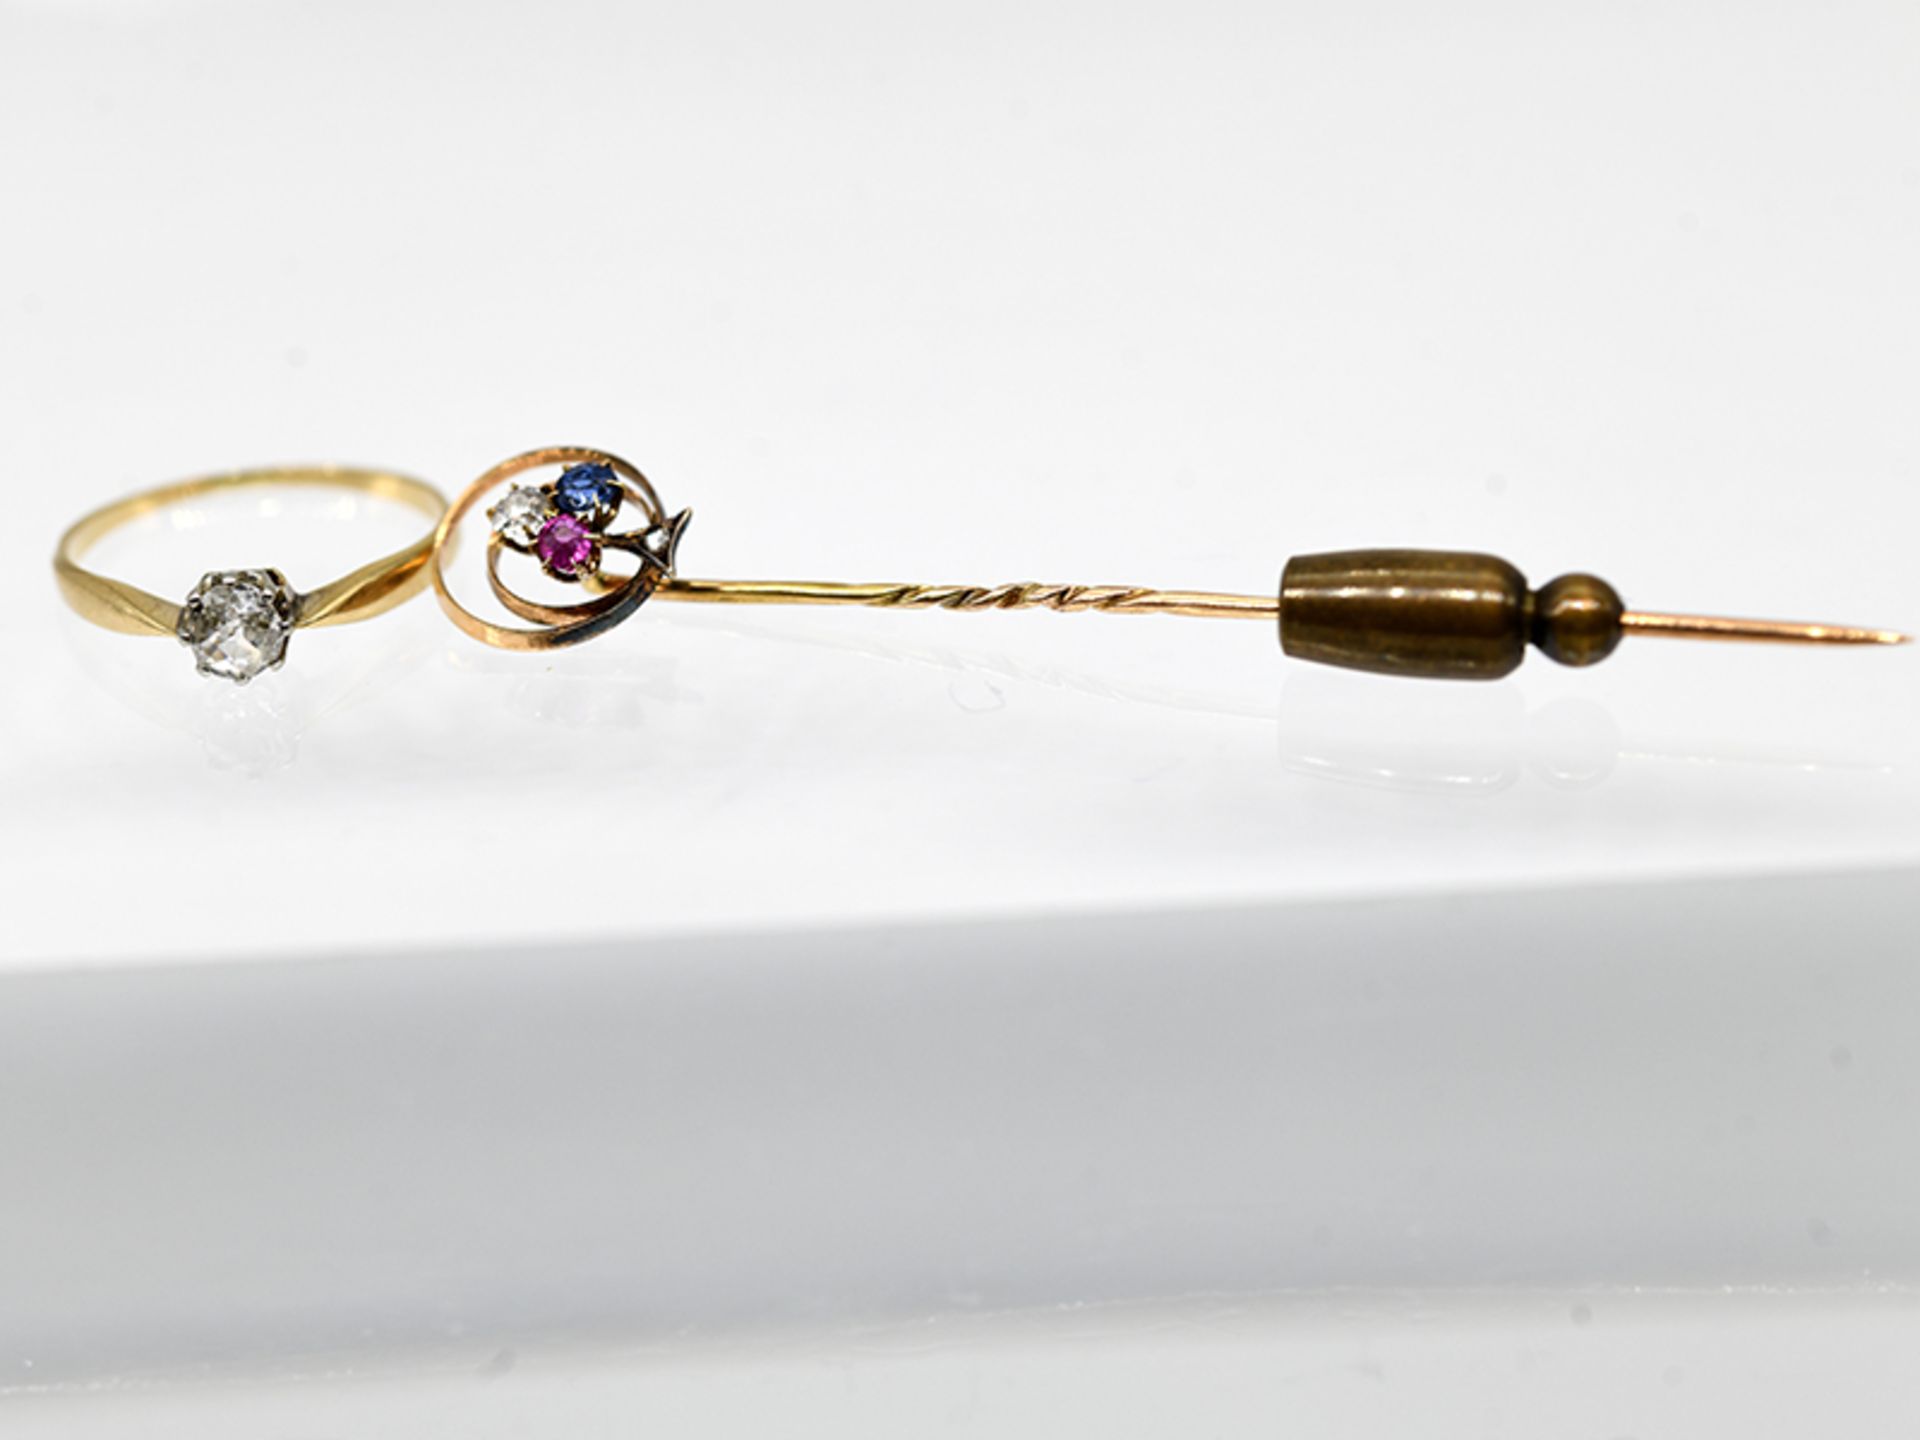 Krawattennadel mit Farbsteinen und Diamanten und Ring mit Altschliff-Diamant ca. 0,2 ct, beides um 1 - Bild 2 aus 2